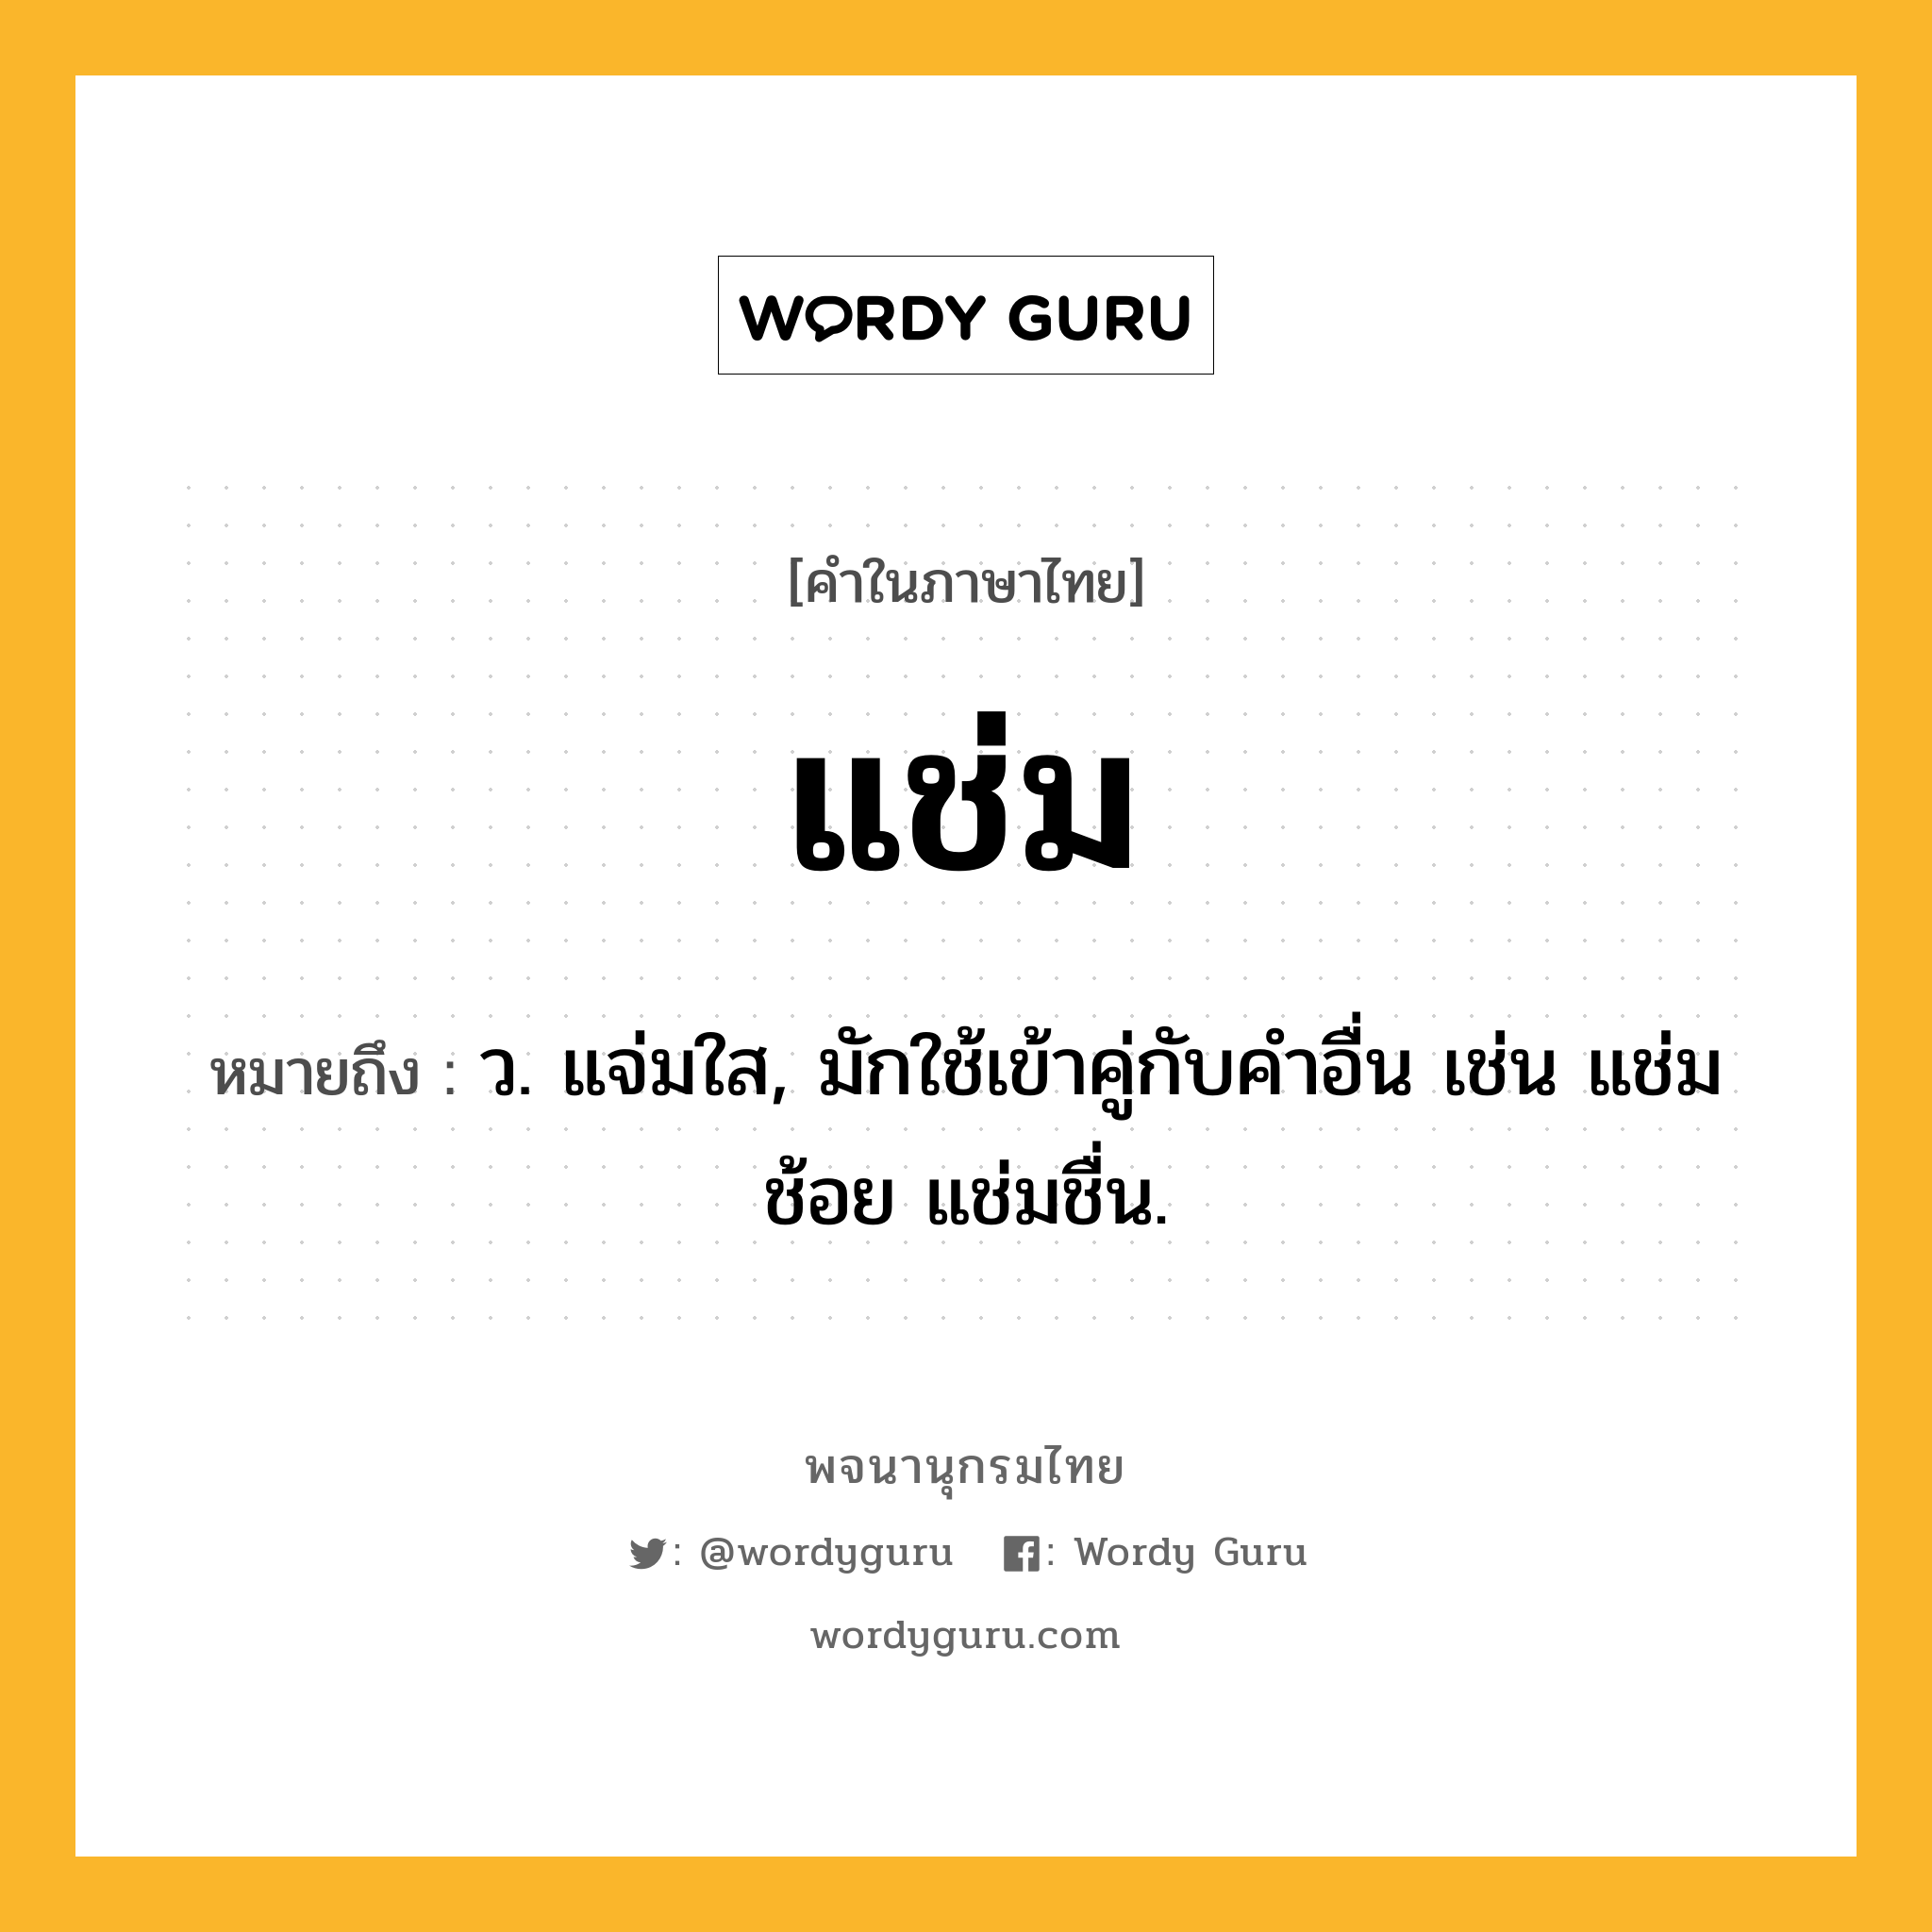 แช่ม ความหมาย หมายถึงอะไร?, คำในภาษาไทย แช่ม หมายถึง ว. แจ่มใส, มักใช้เข้าคู่กับคําอื่น เช่น แช่มช้อย แช่มชื่น.